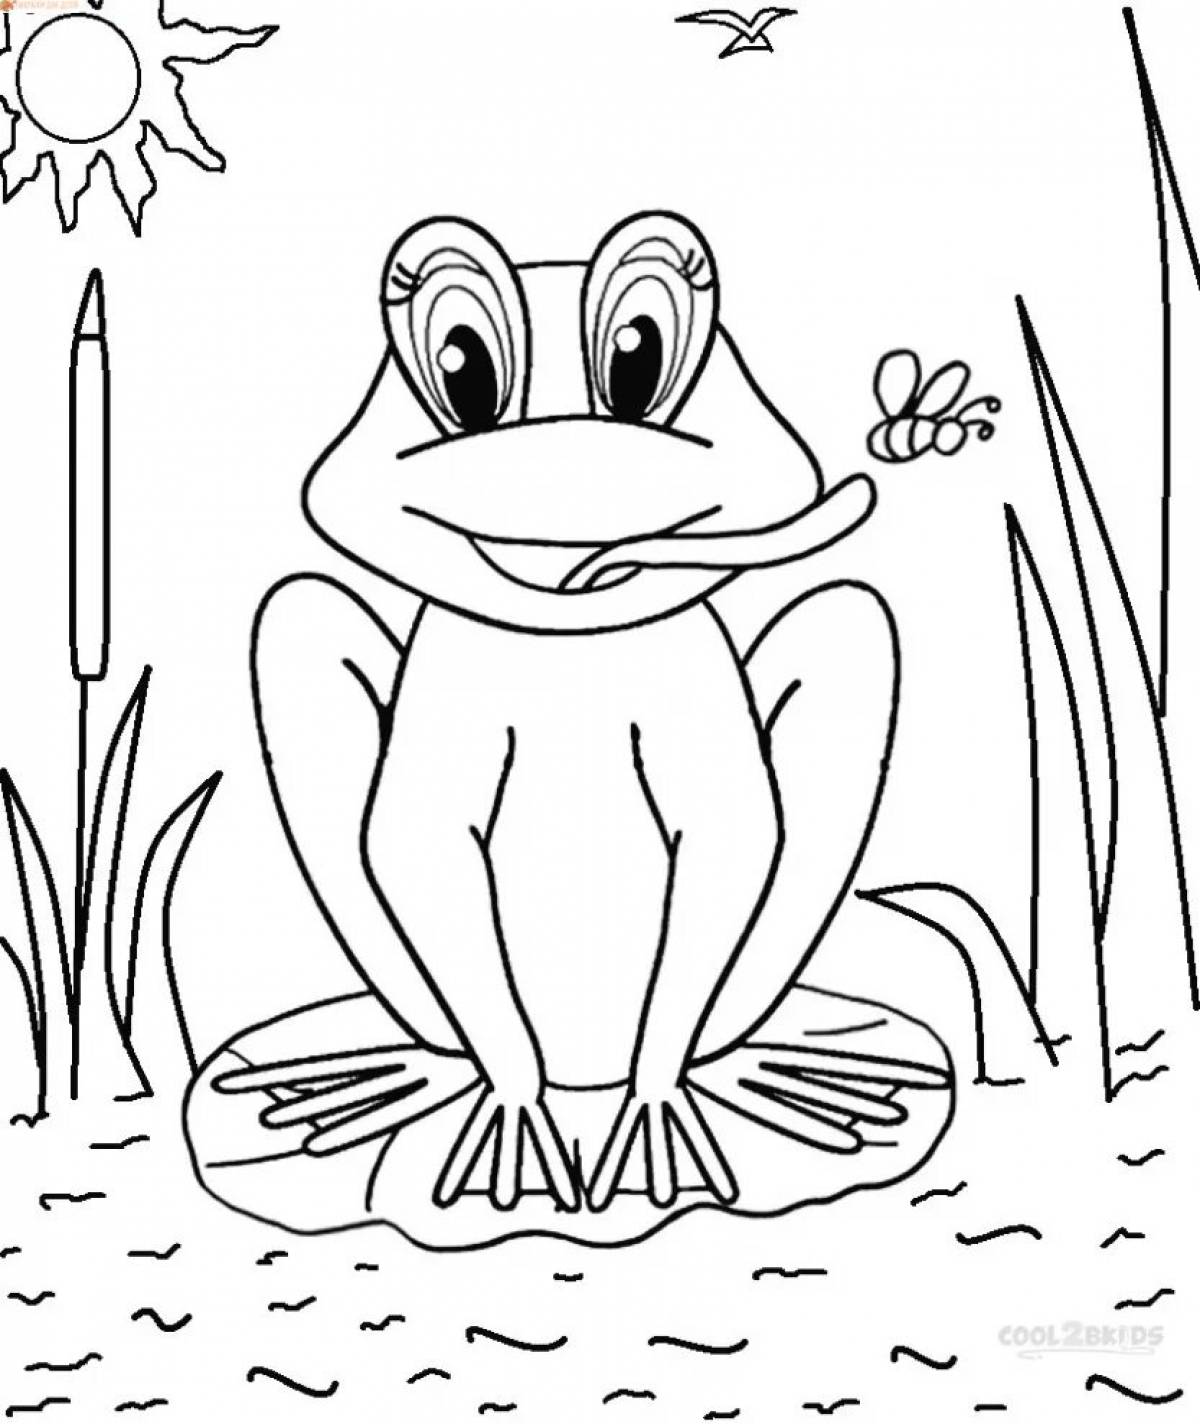 Frog traveler for kids #8